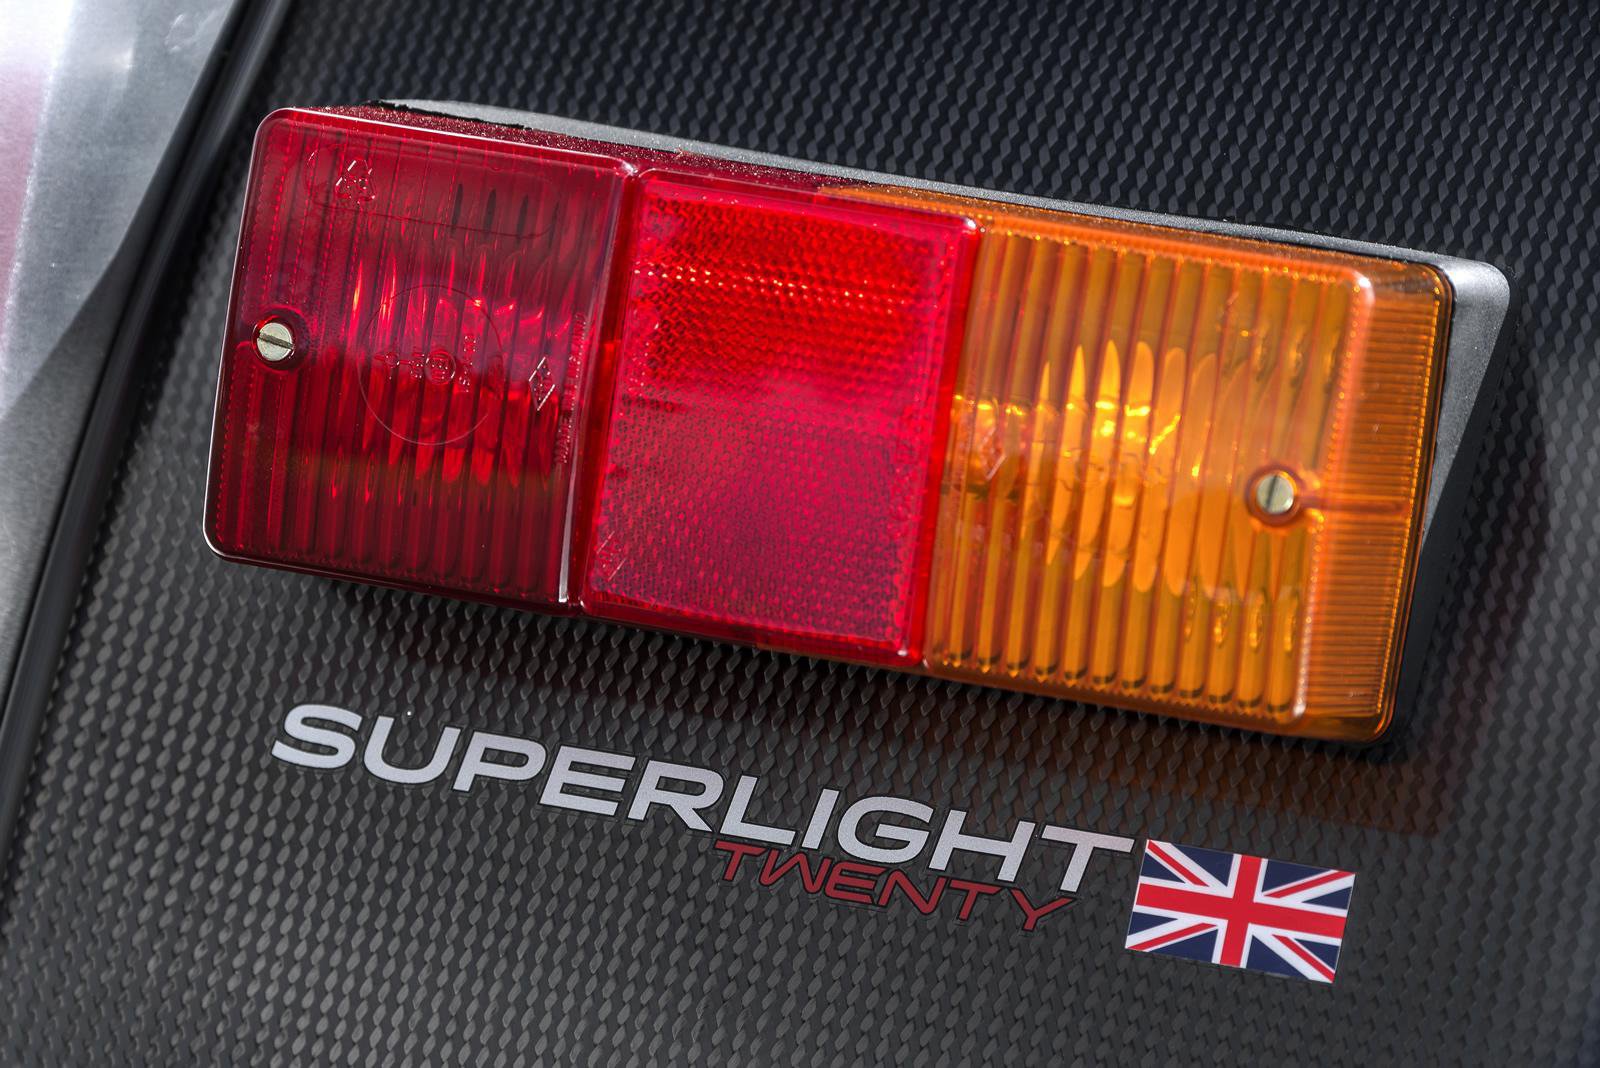 Caterham Superlight